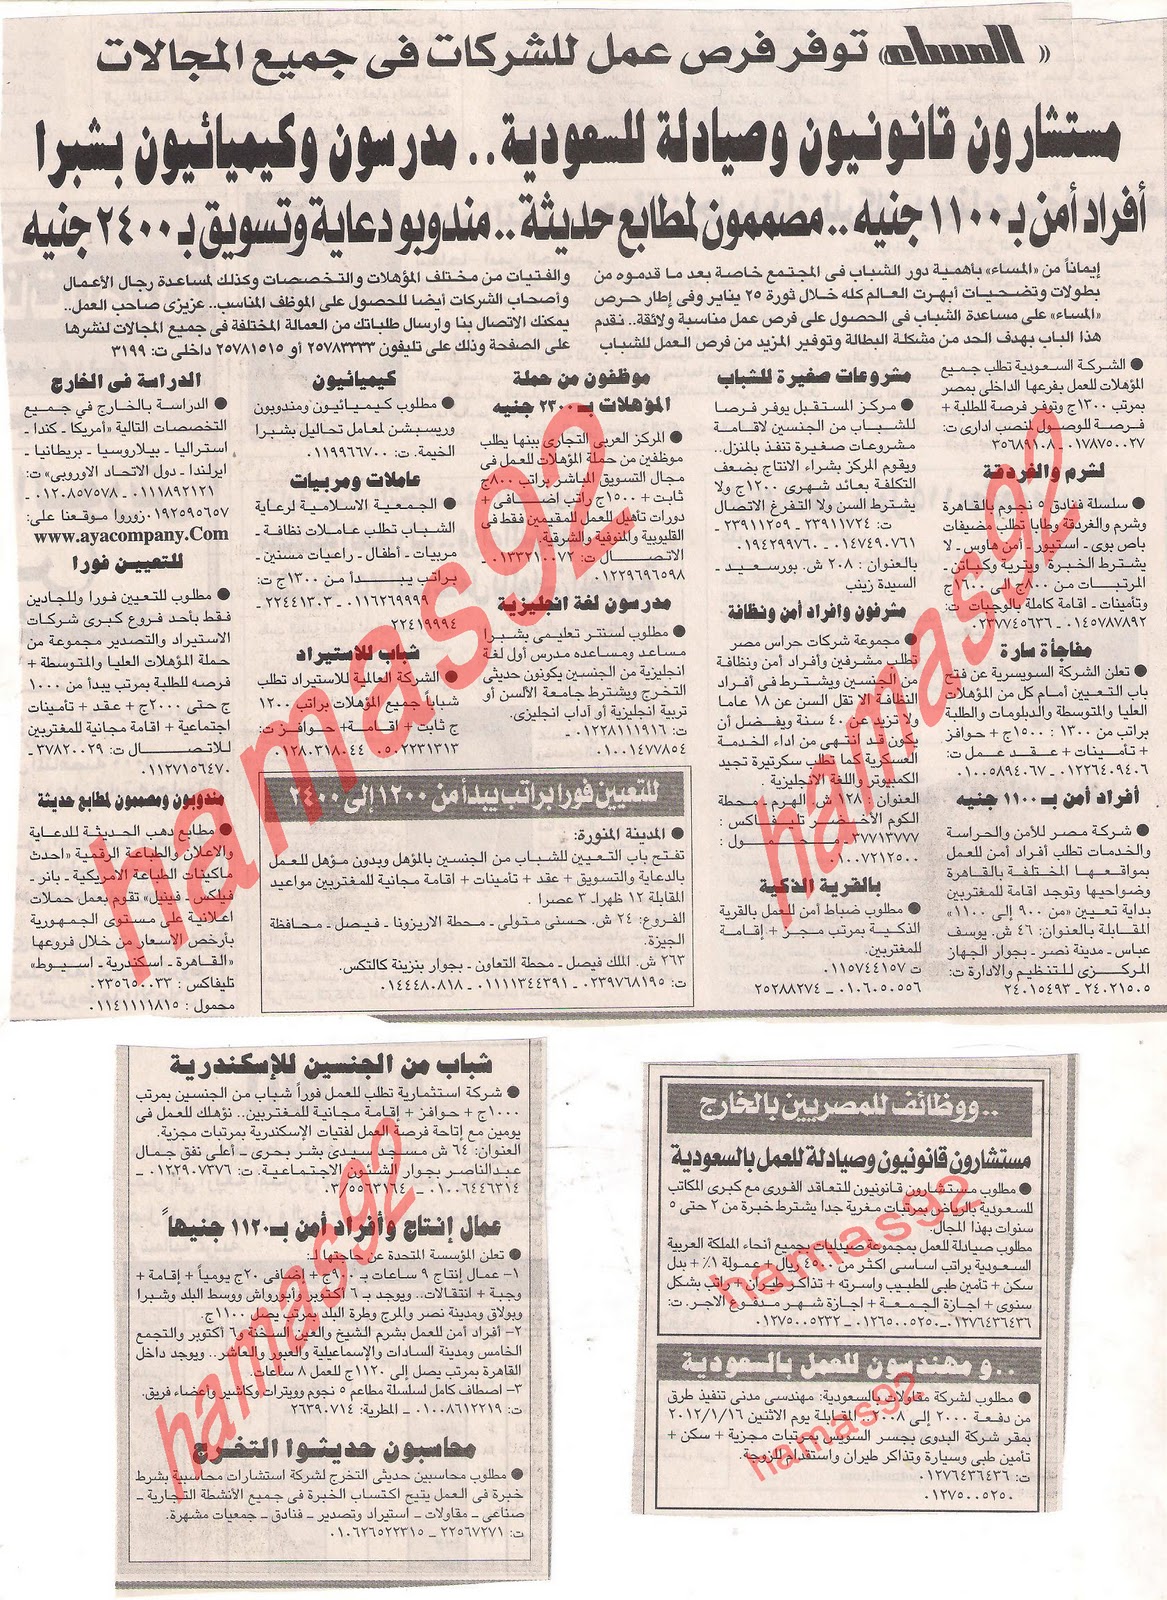 اعلانات وظائف جريدة المساء الاربعاء  11\12\2012  Picture+001